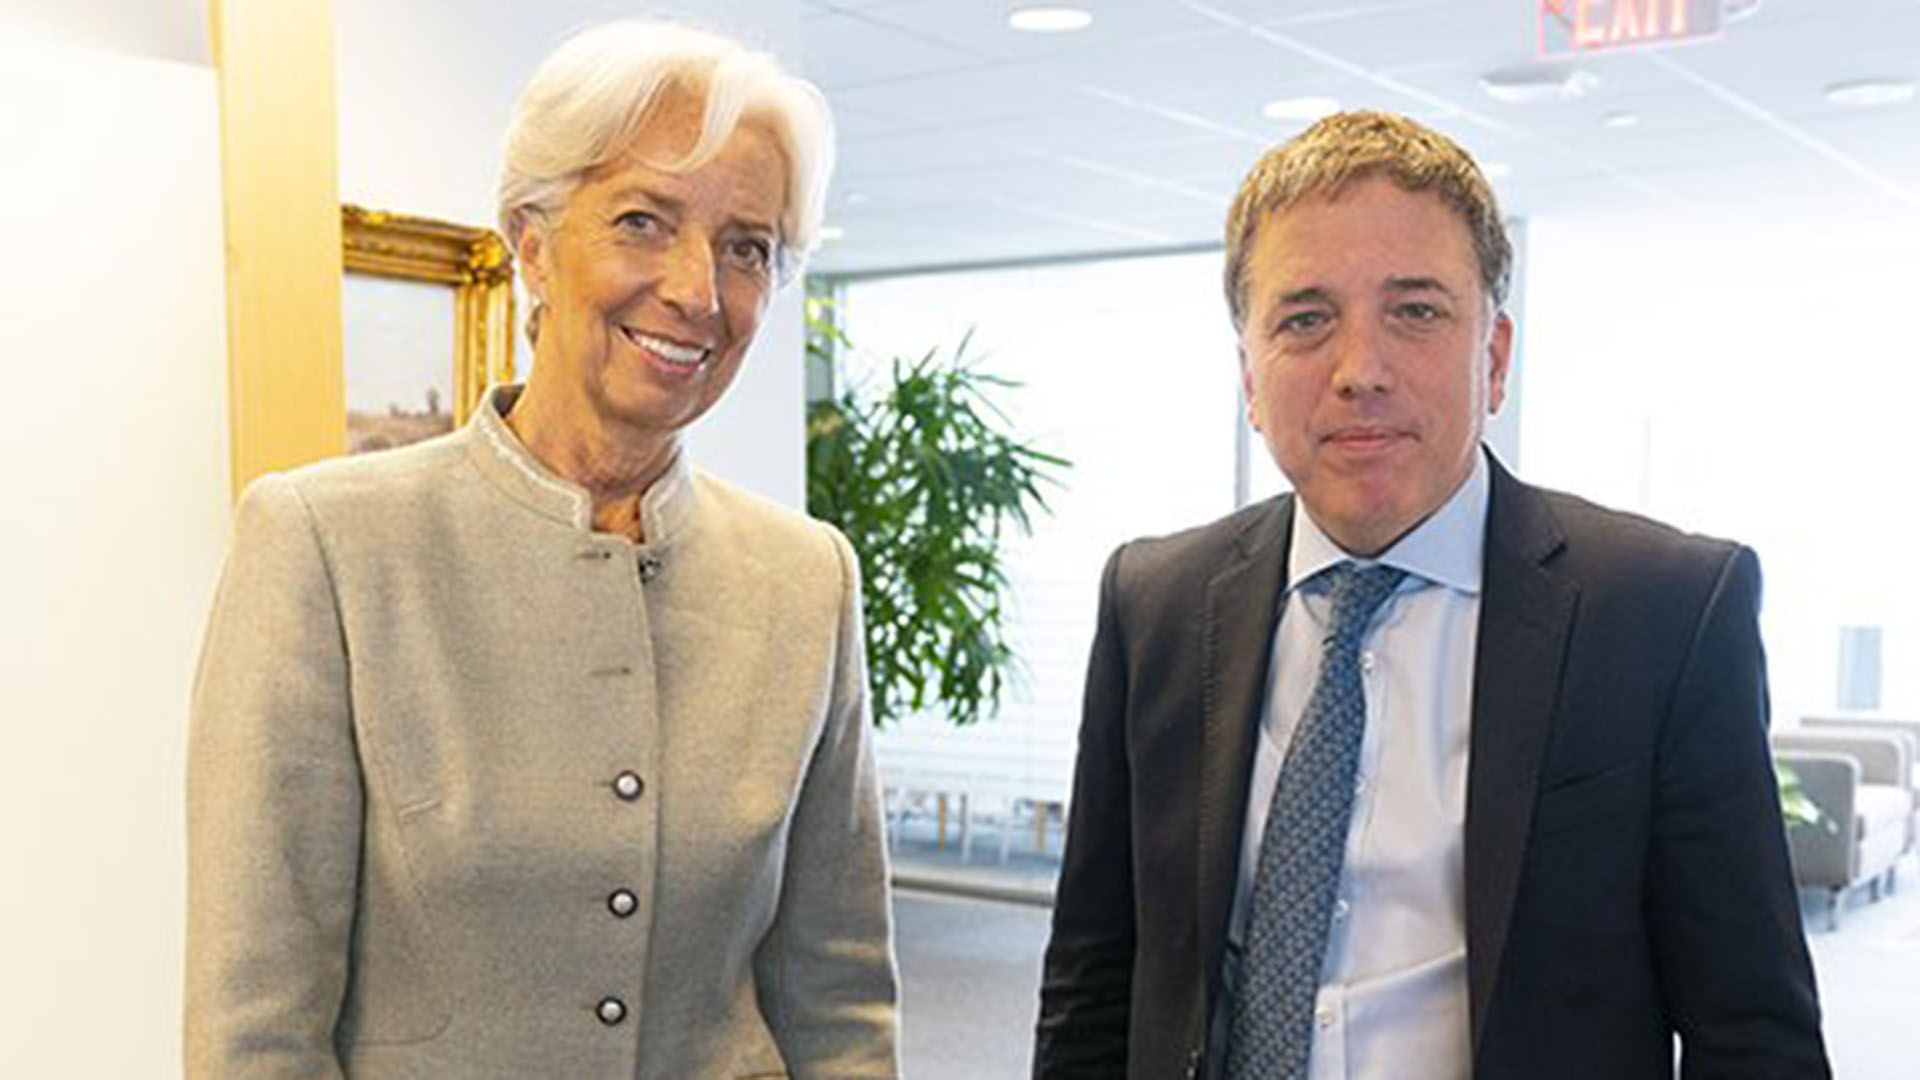 Dujovne junto a Lagarde, la entonces directora del FMI, que concedió a la Argentina un crédito de USD 57.000 millones, del que se llegaron a desembolsaron USD 45.000 millones